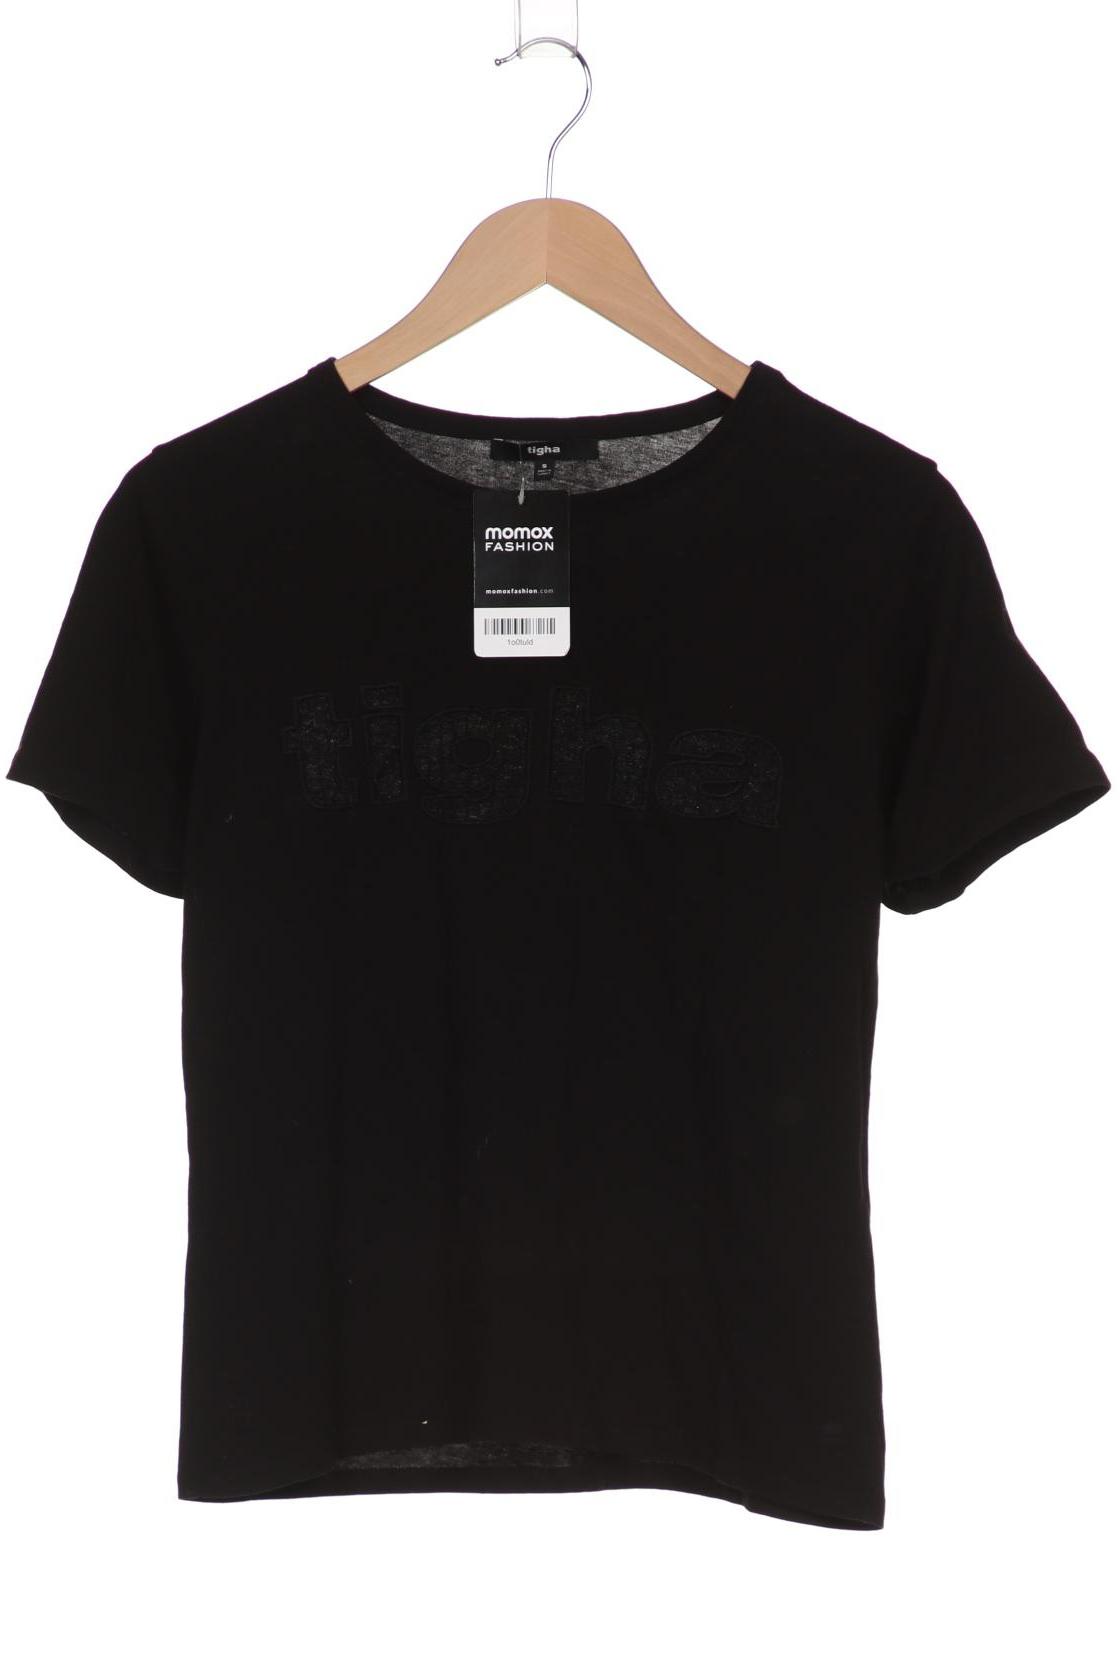 tigha Damen T-Shirt, schwarz von tigha